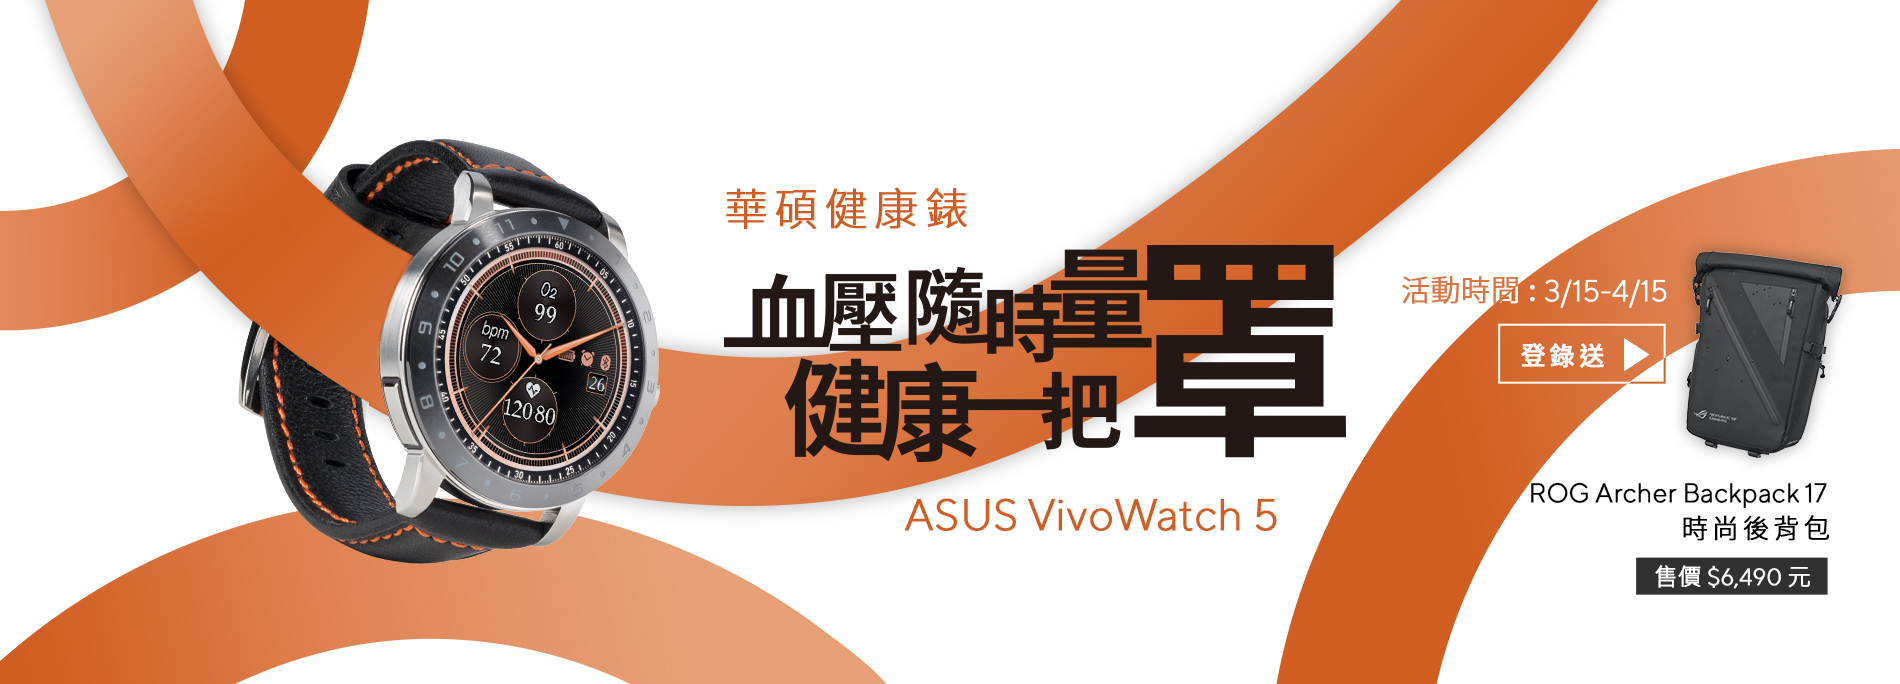 【健康一把罩】買ASUS VivoWatch 5  健康錶登錄送「ROG Archer Backpack 17 電競後背包 」價值$ 6,490 元